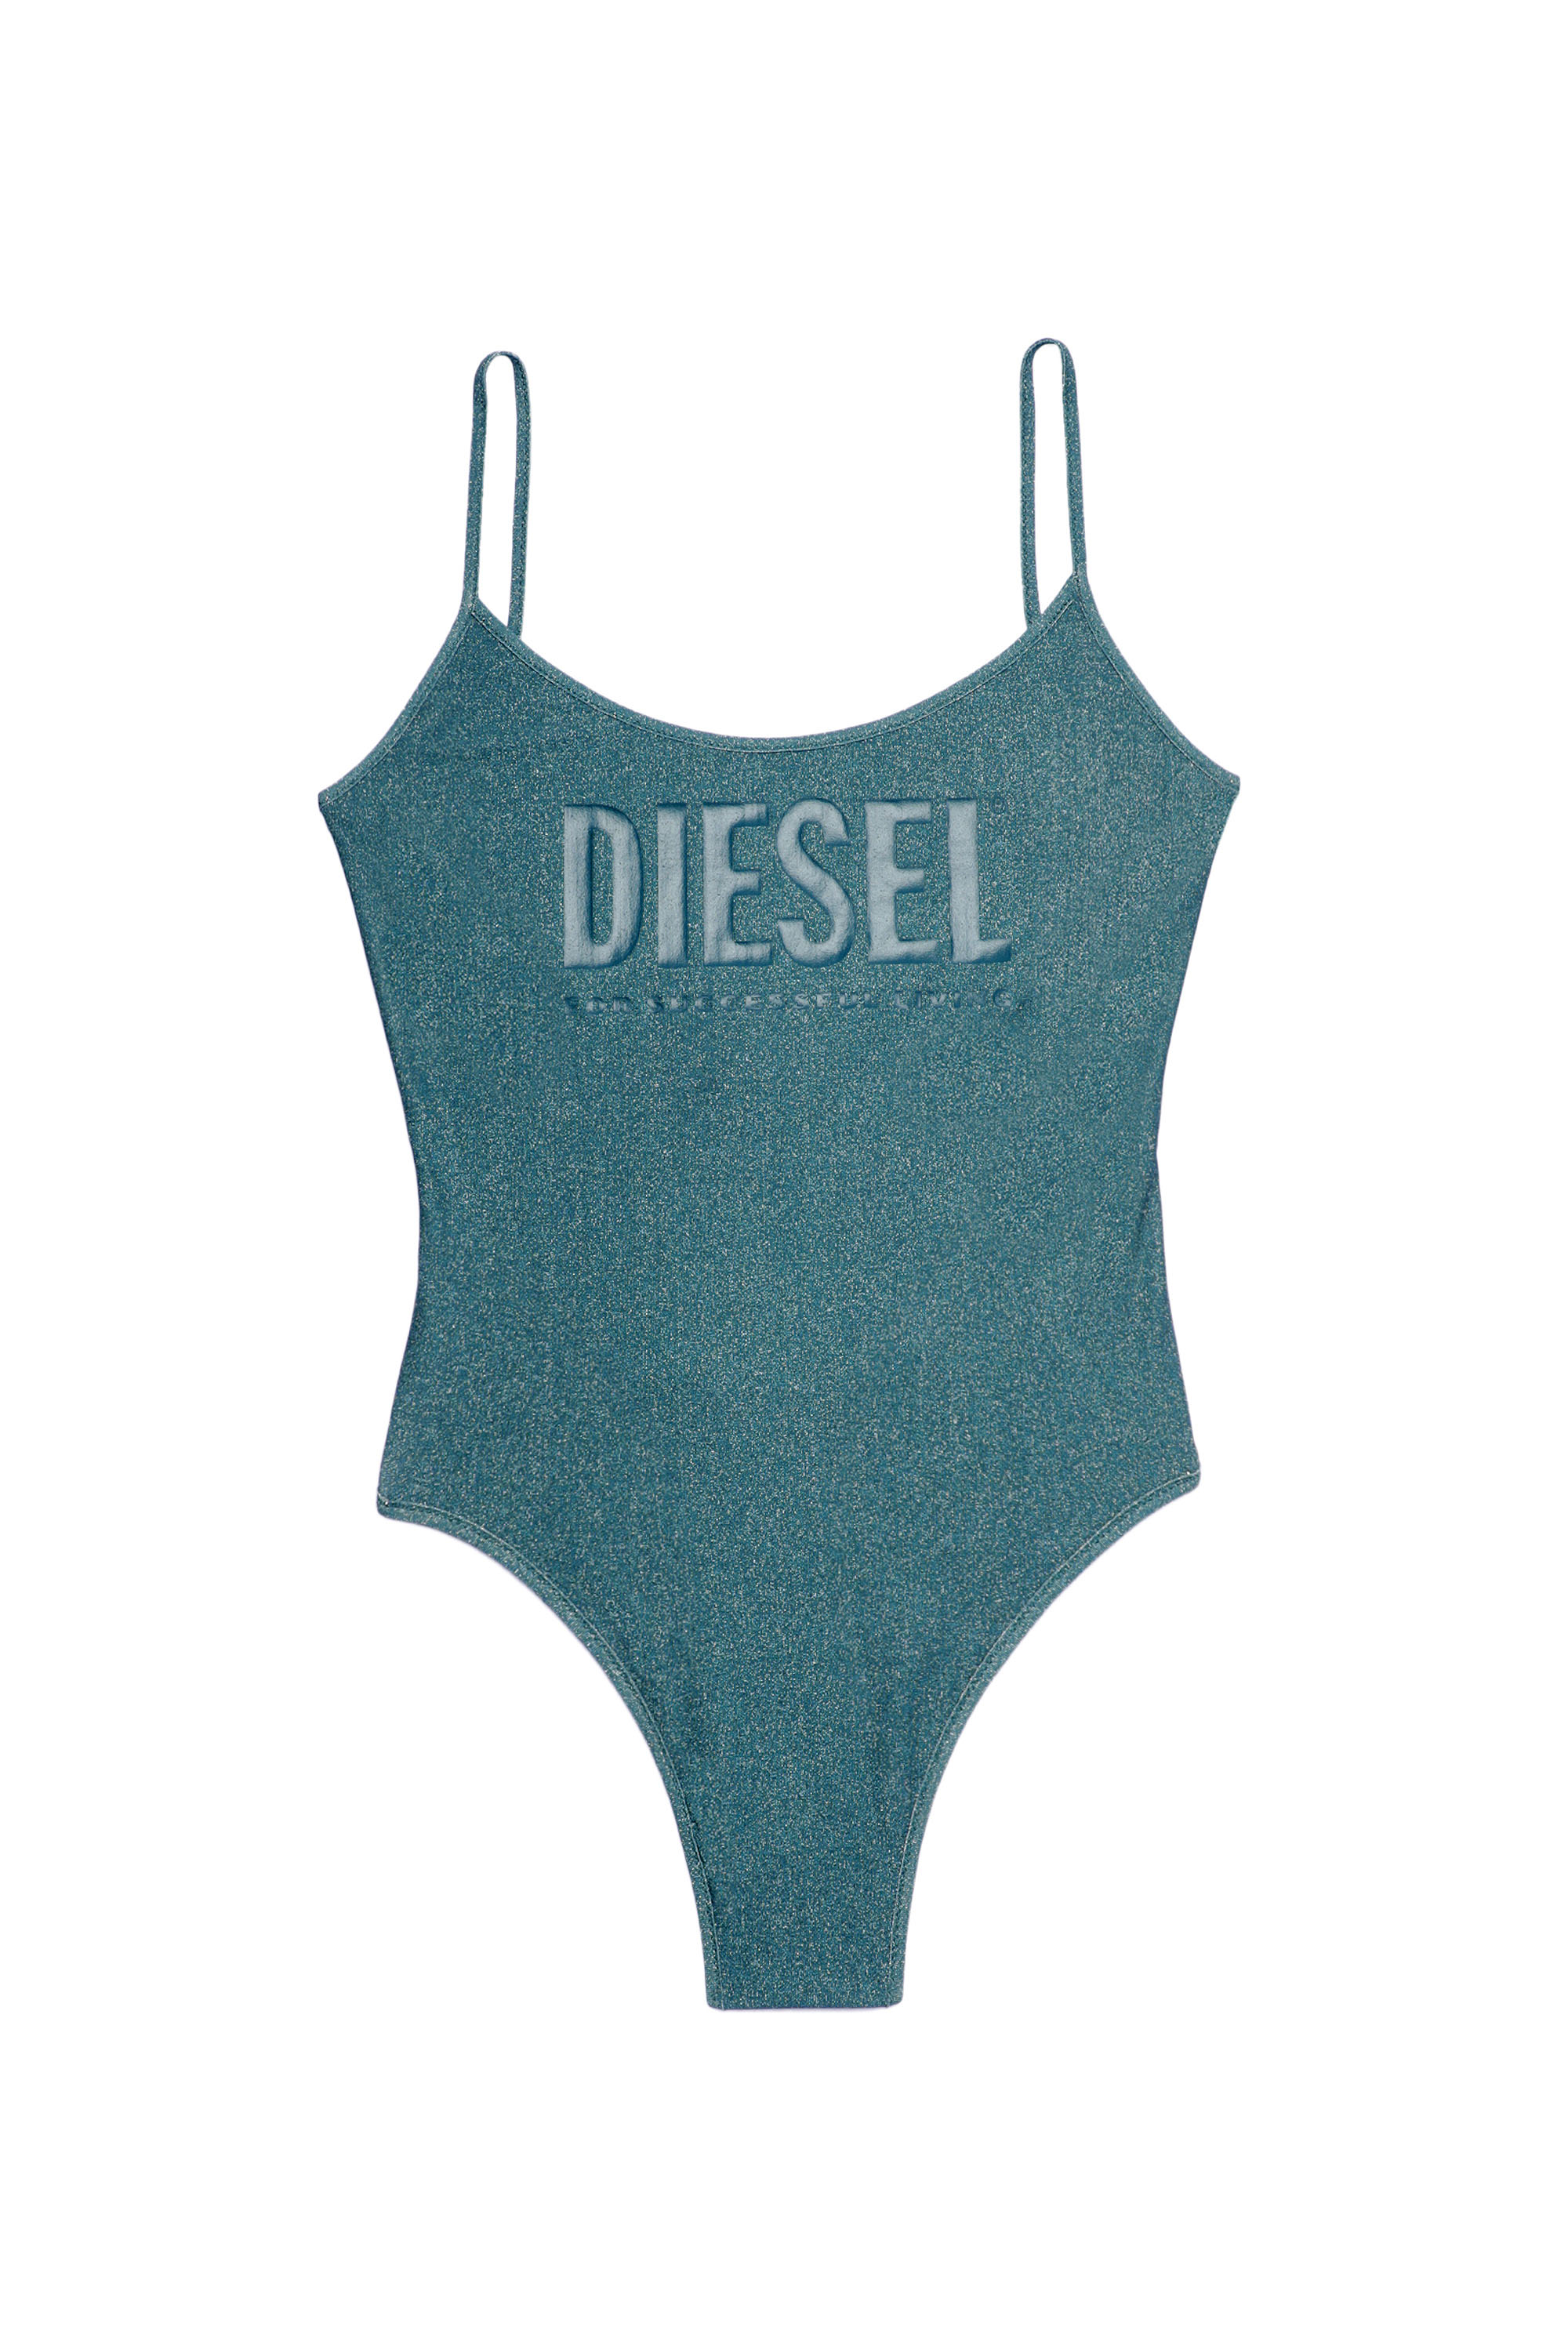 Diesel - BFSW-GRETEL, Blue - Image 1